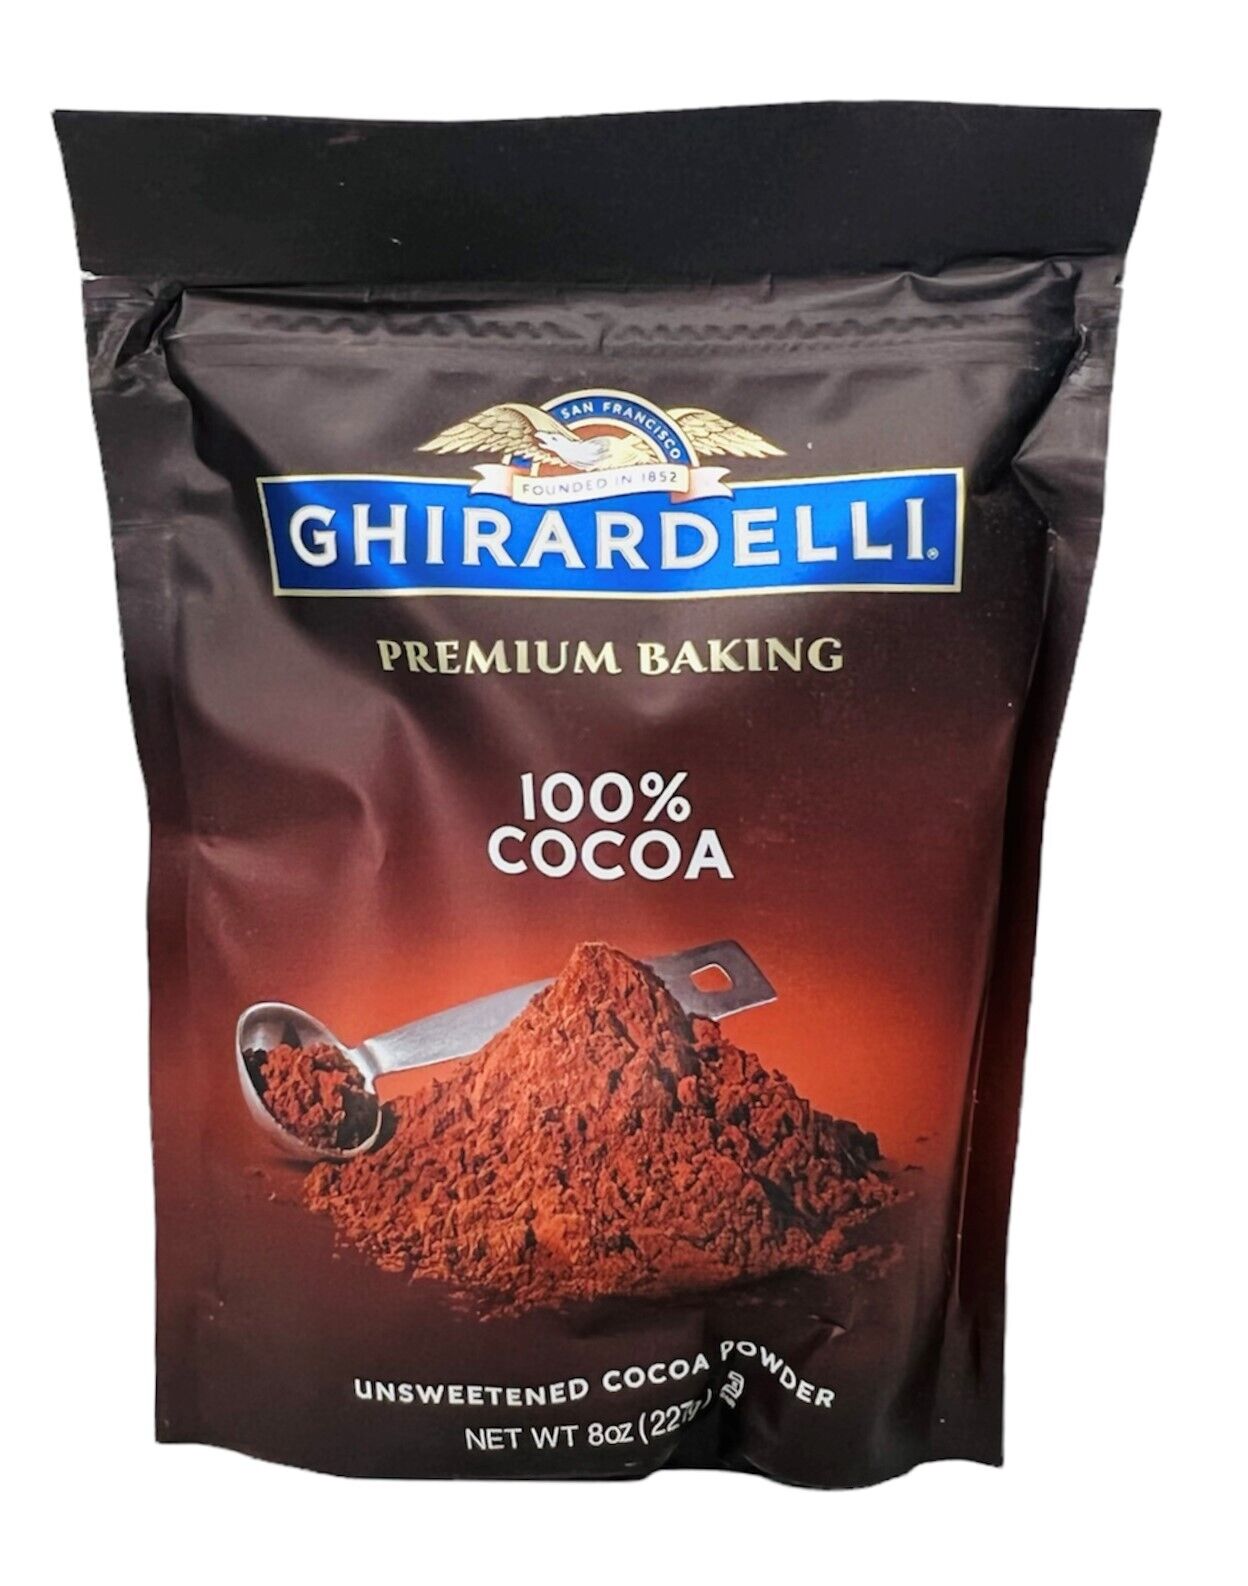 Ghirardelli Premium Baking 100% Cocoa Unsweetened Cocoa Powder...